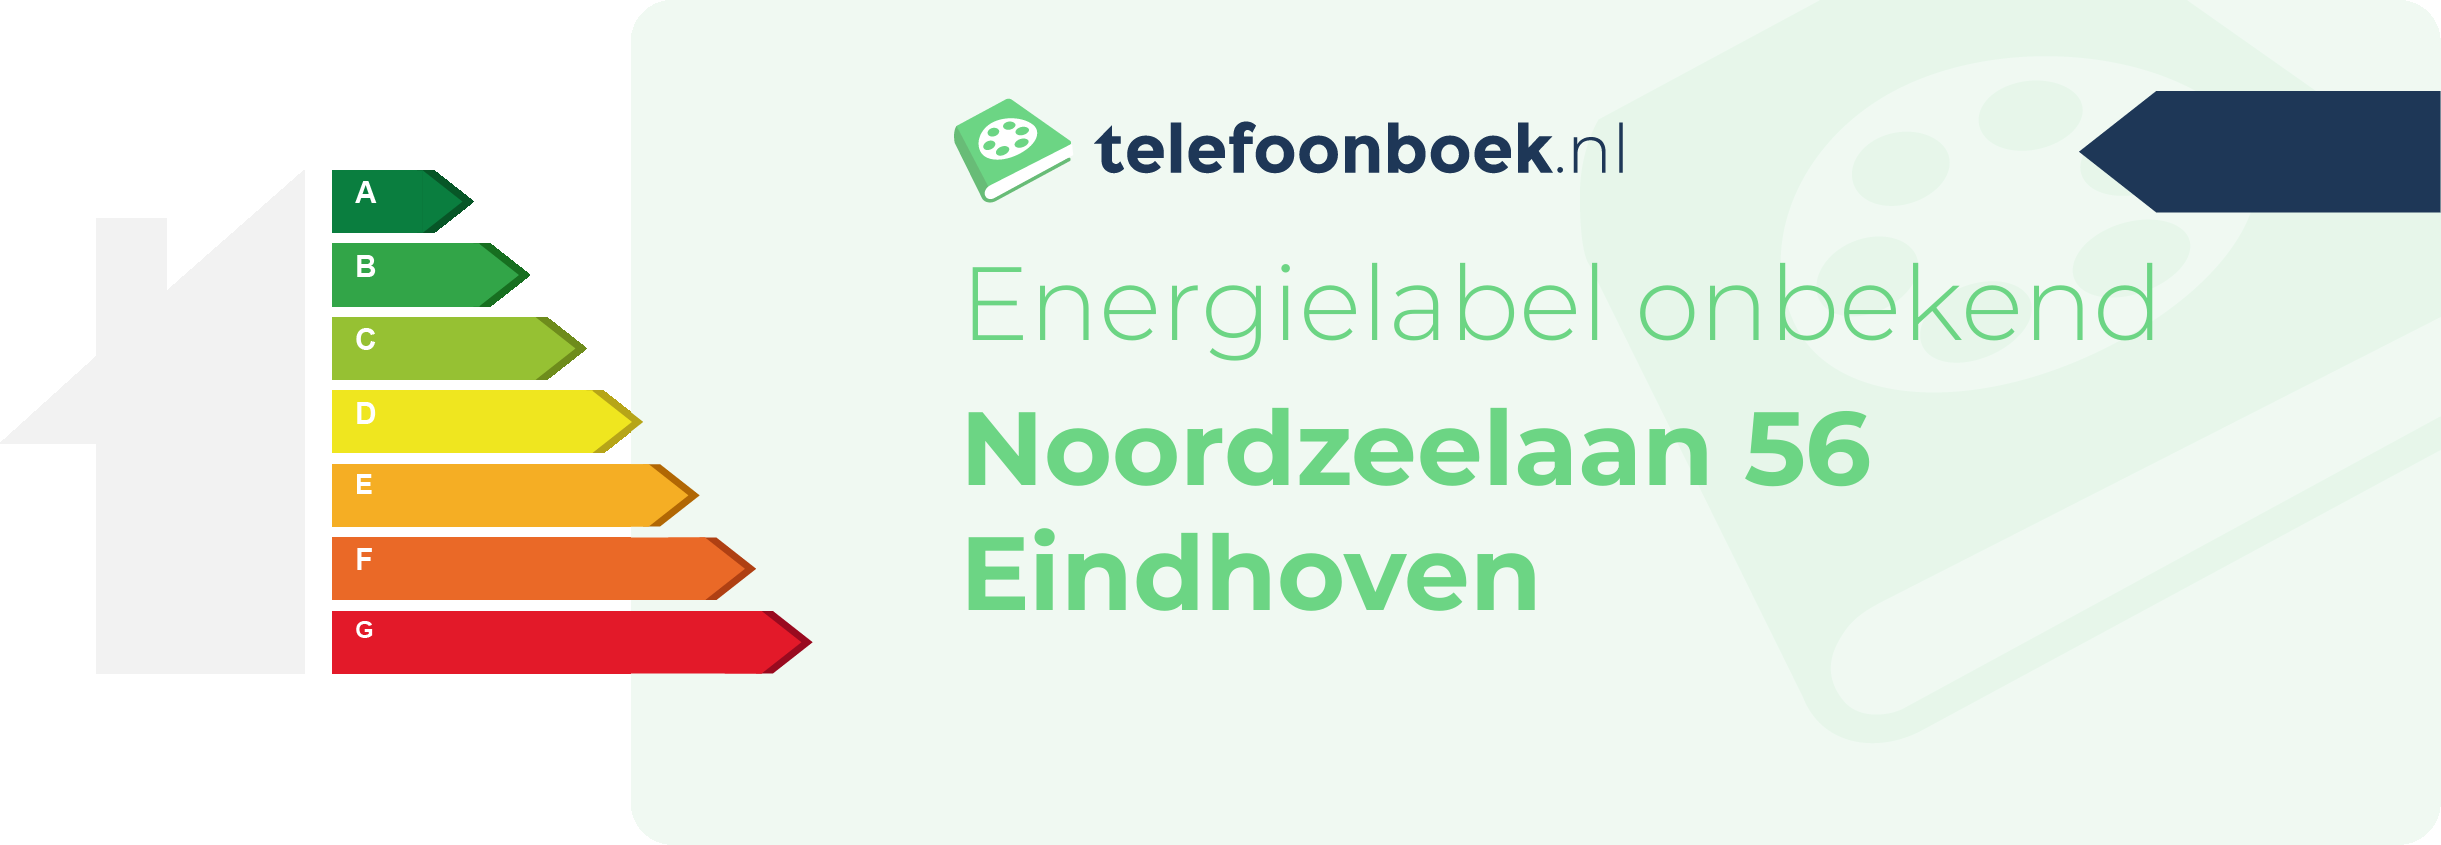 Energielabel Noordzeelaan 56 Eindhoven